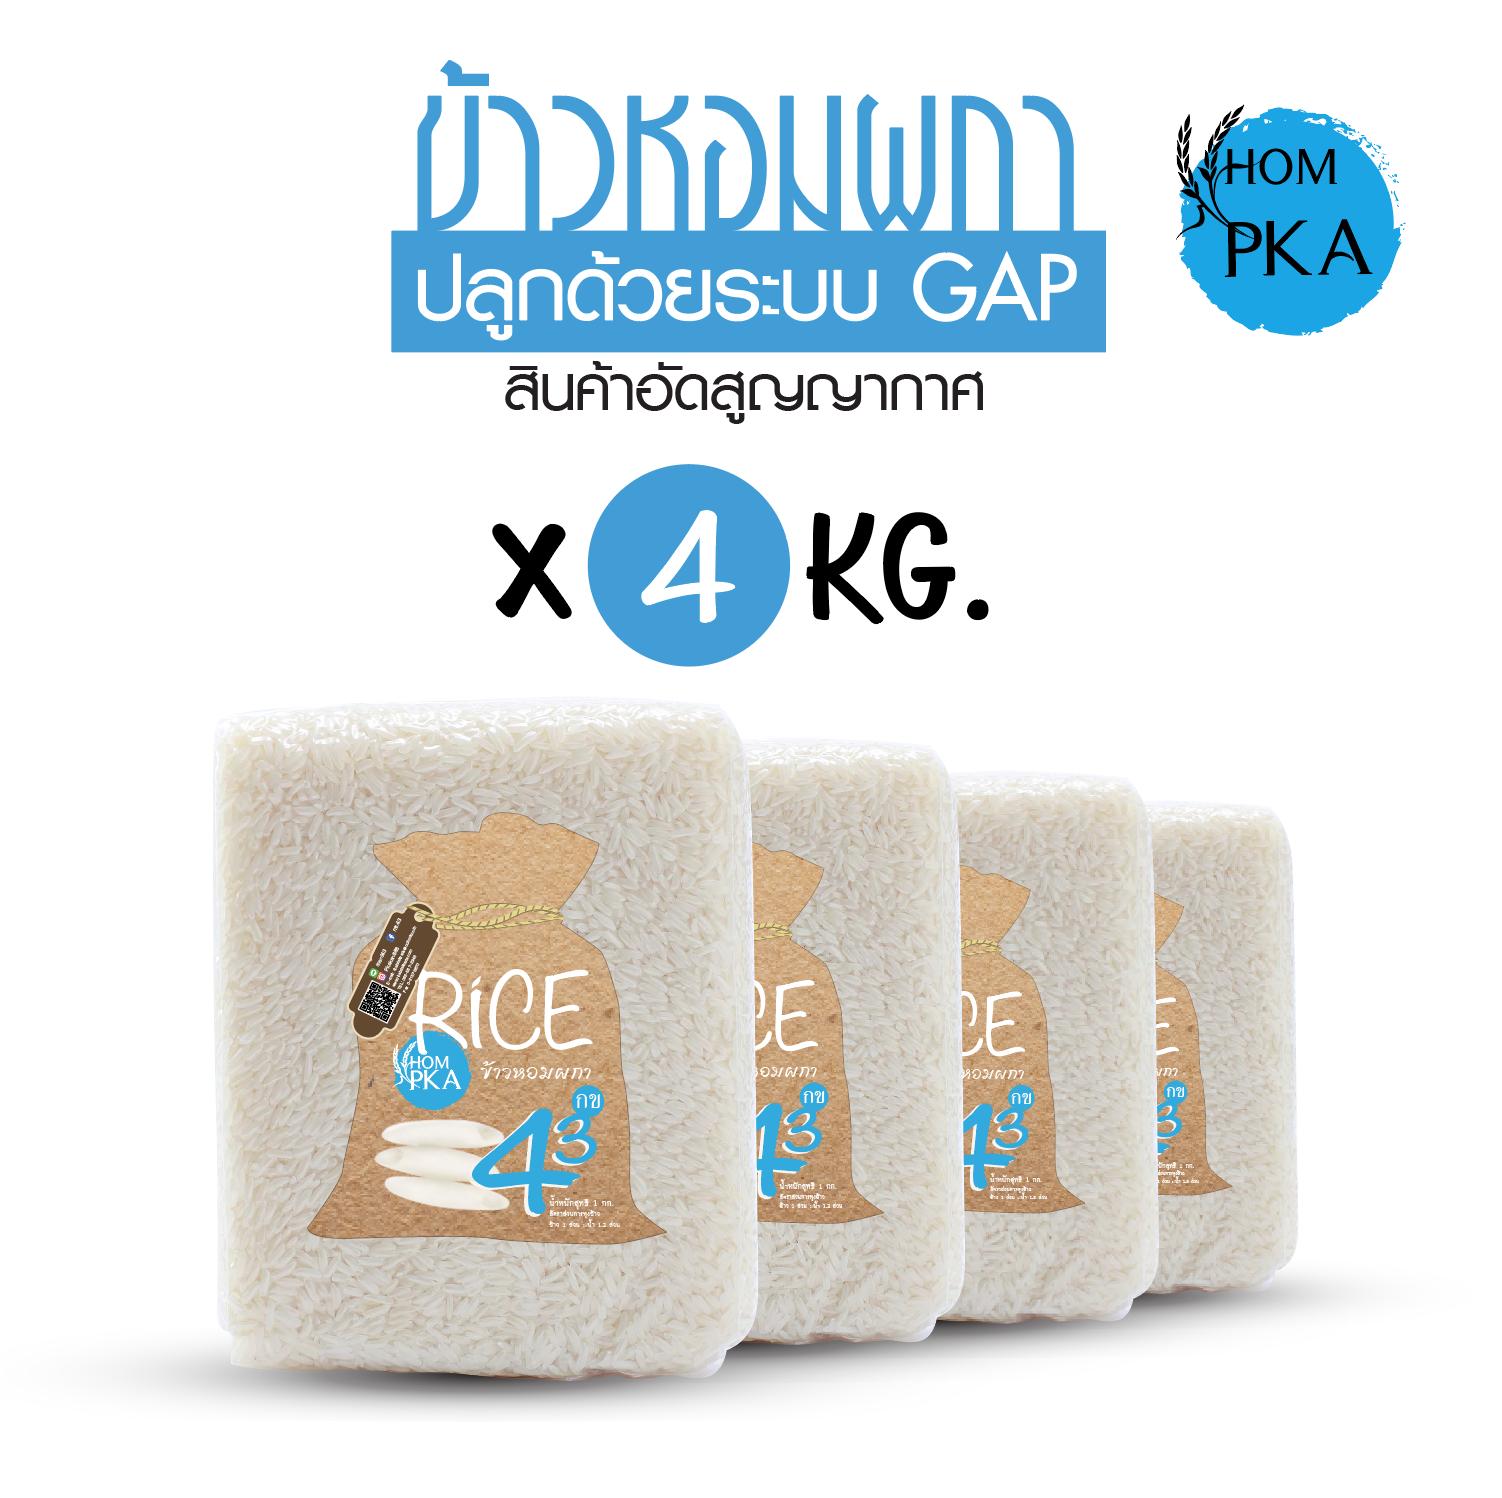 ข้าวกข43 แท้ 100% I 泰国大米品种编号43 RD43 Rice variety ตราหอมผกา ขนาด 4 กก. ปลูกด้วยระบบ GAP, มาตรฐานการผลิต GMP. ข้าวสาร ข้าวหอม ดัชนีน้ำตาลปานกลางค่อนข้างต่ำ